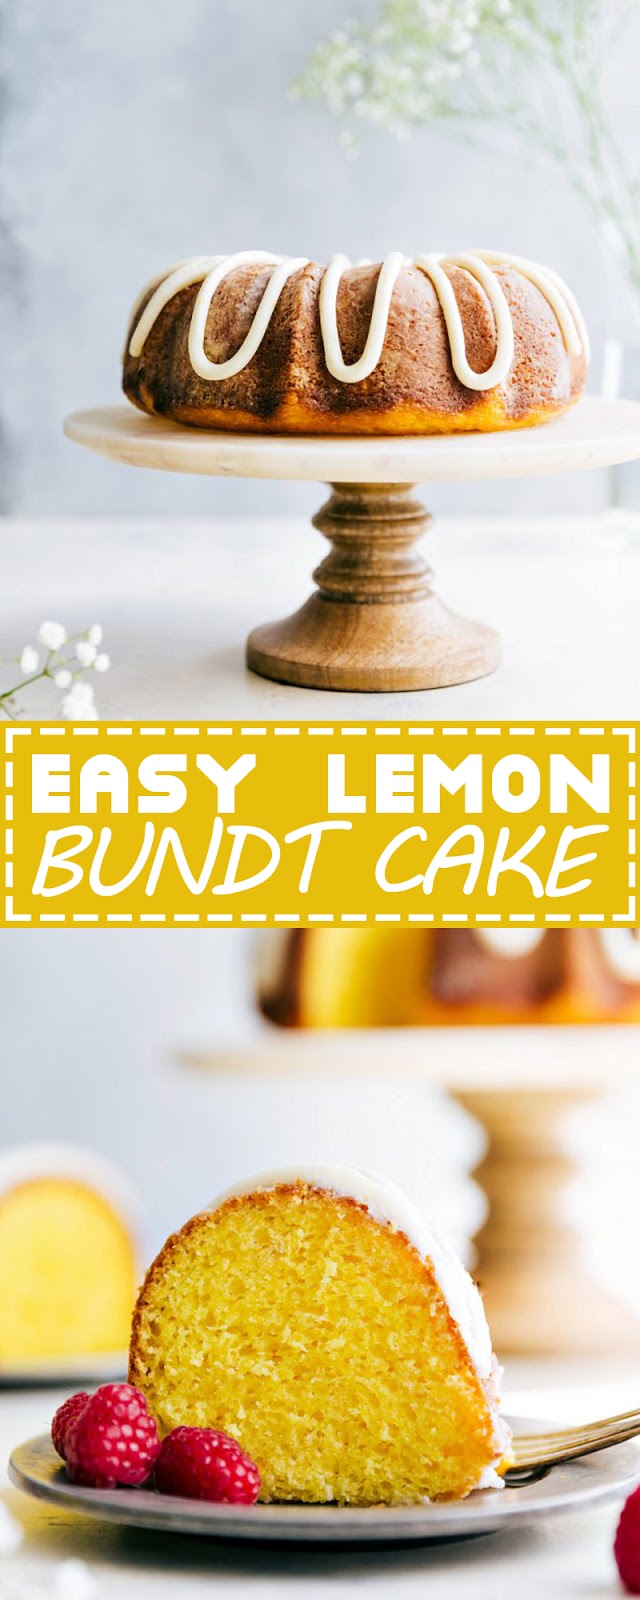 EASY LEMON BUNDT CAKE